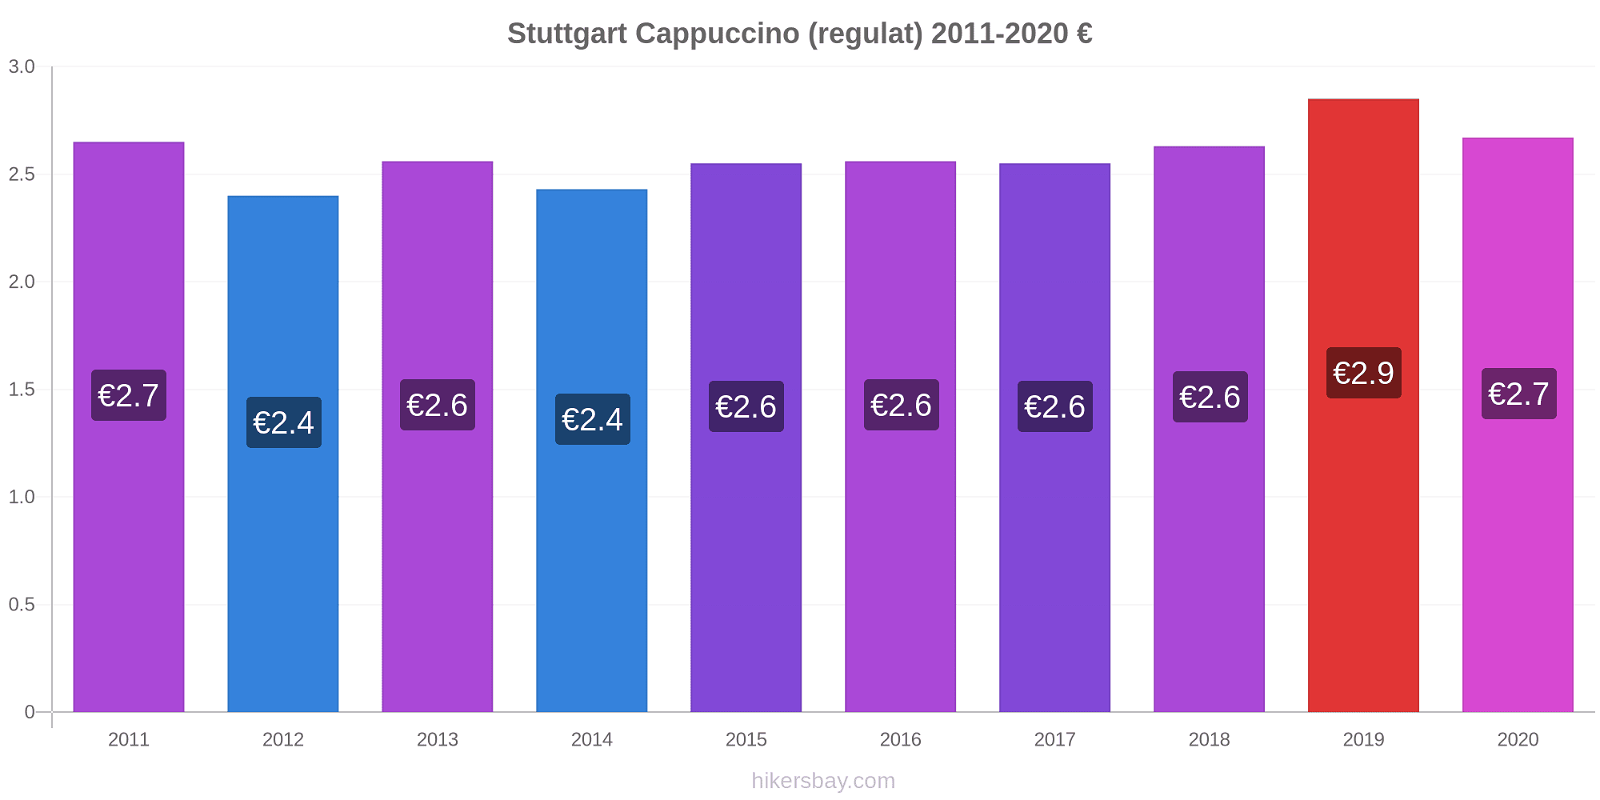 Stuttgart modificări de preț Cappuccino (regulat) hikersbay.com